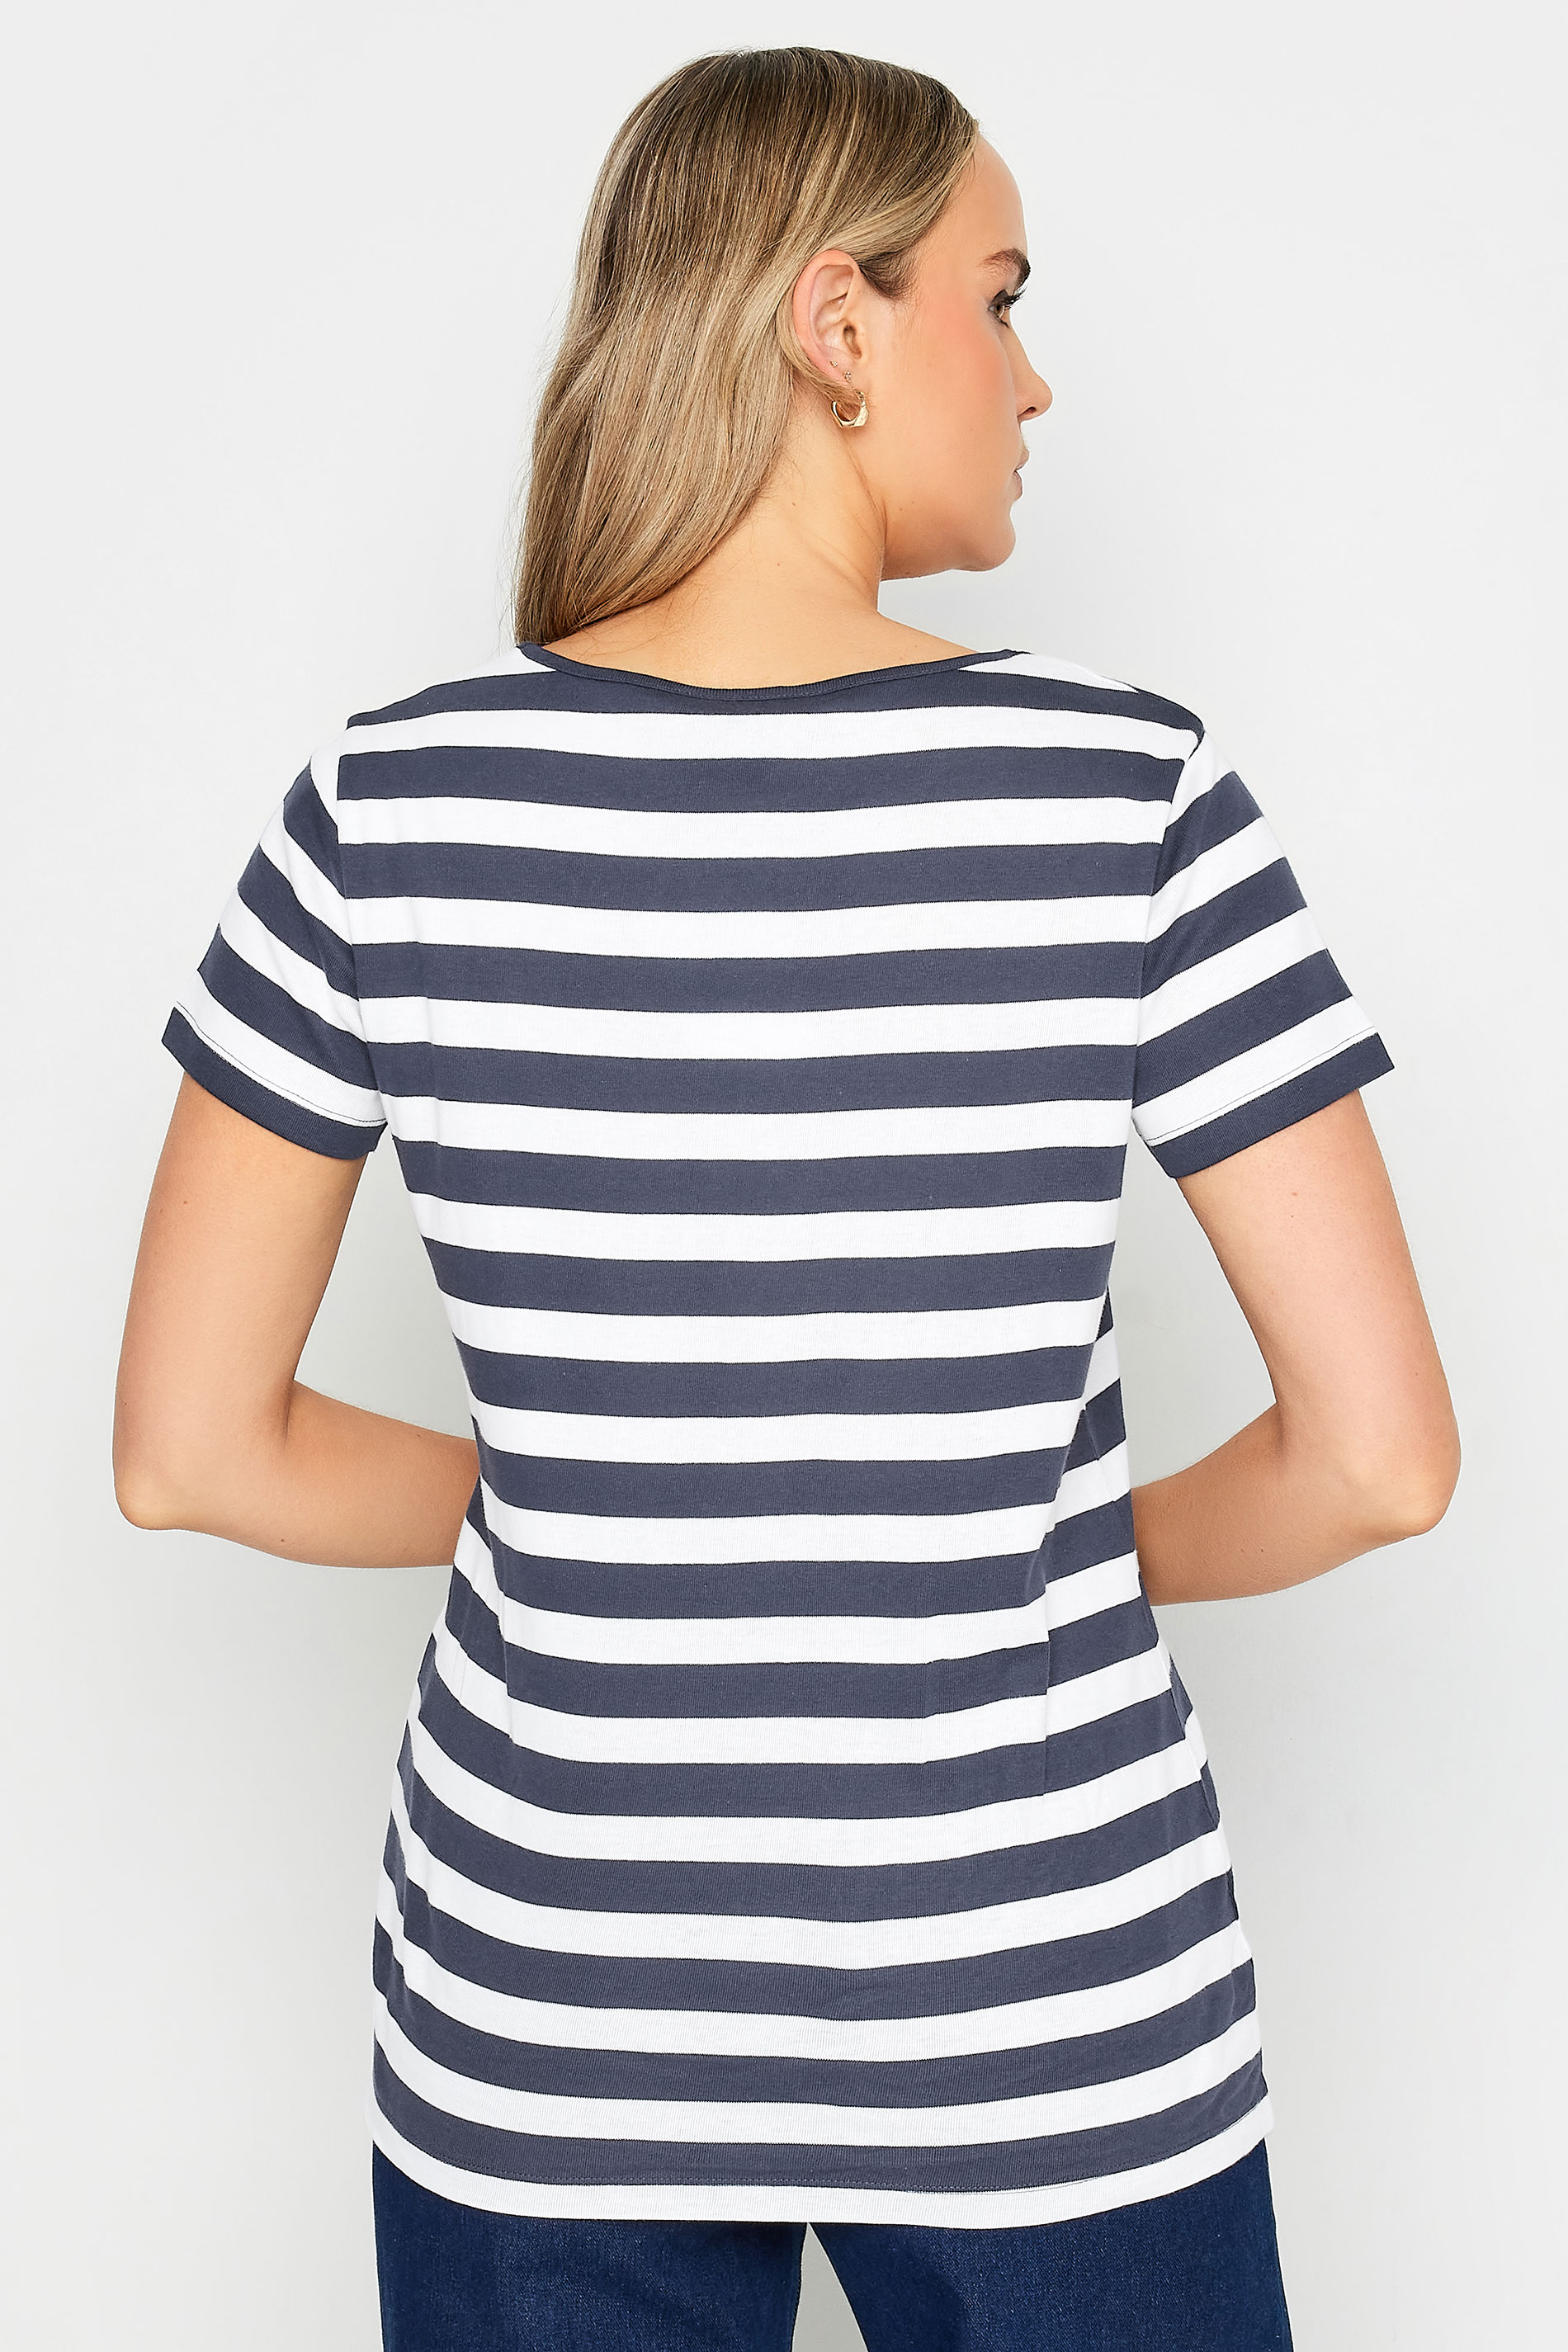 LTS Tall Womens Navy Blue Stripe Crew Neck T-Shirt | Long Tall Sally 3